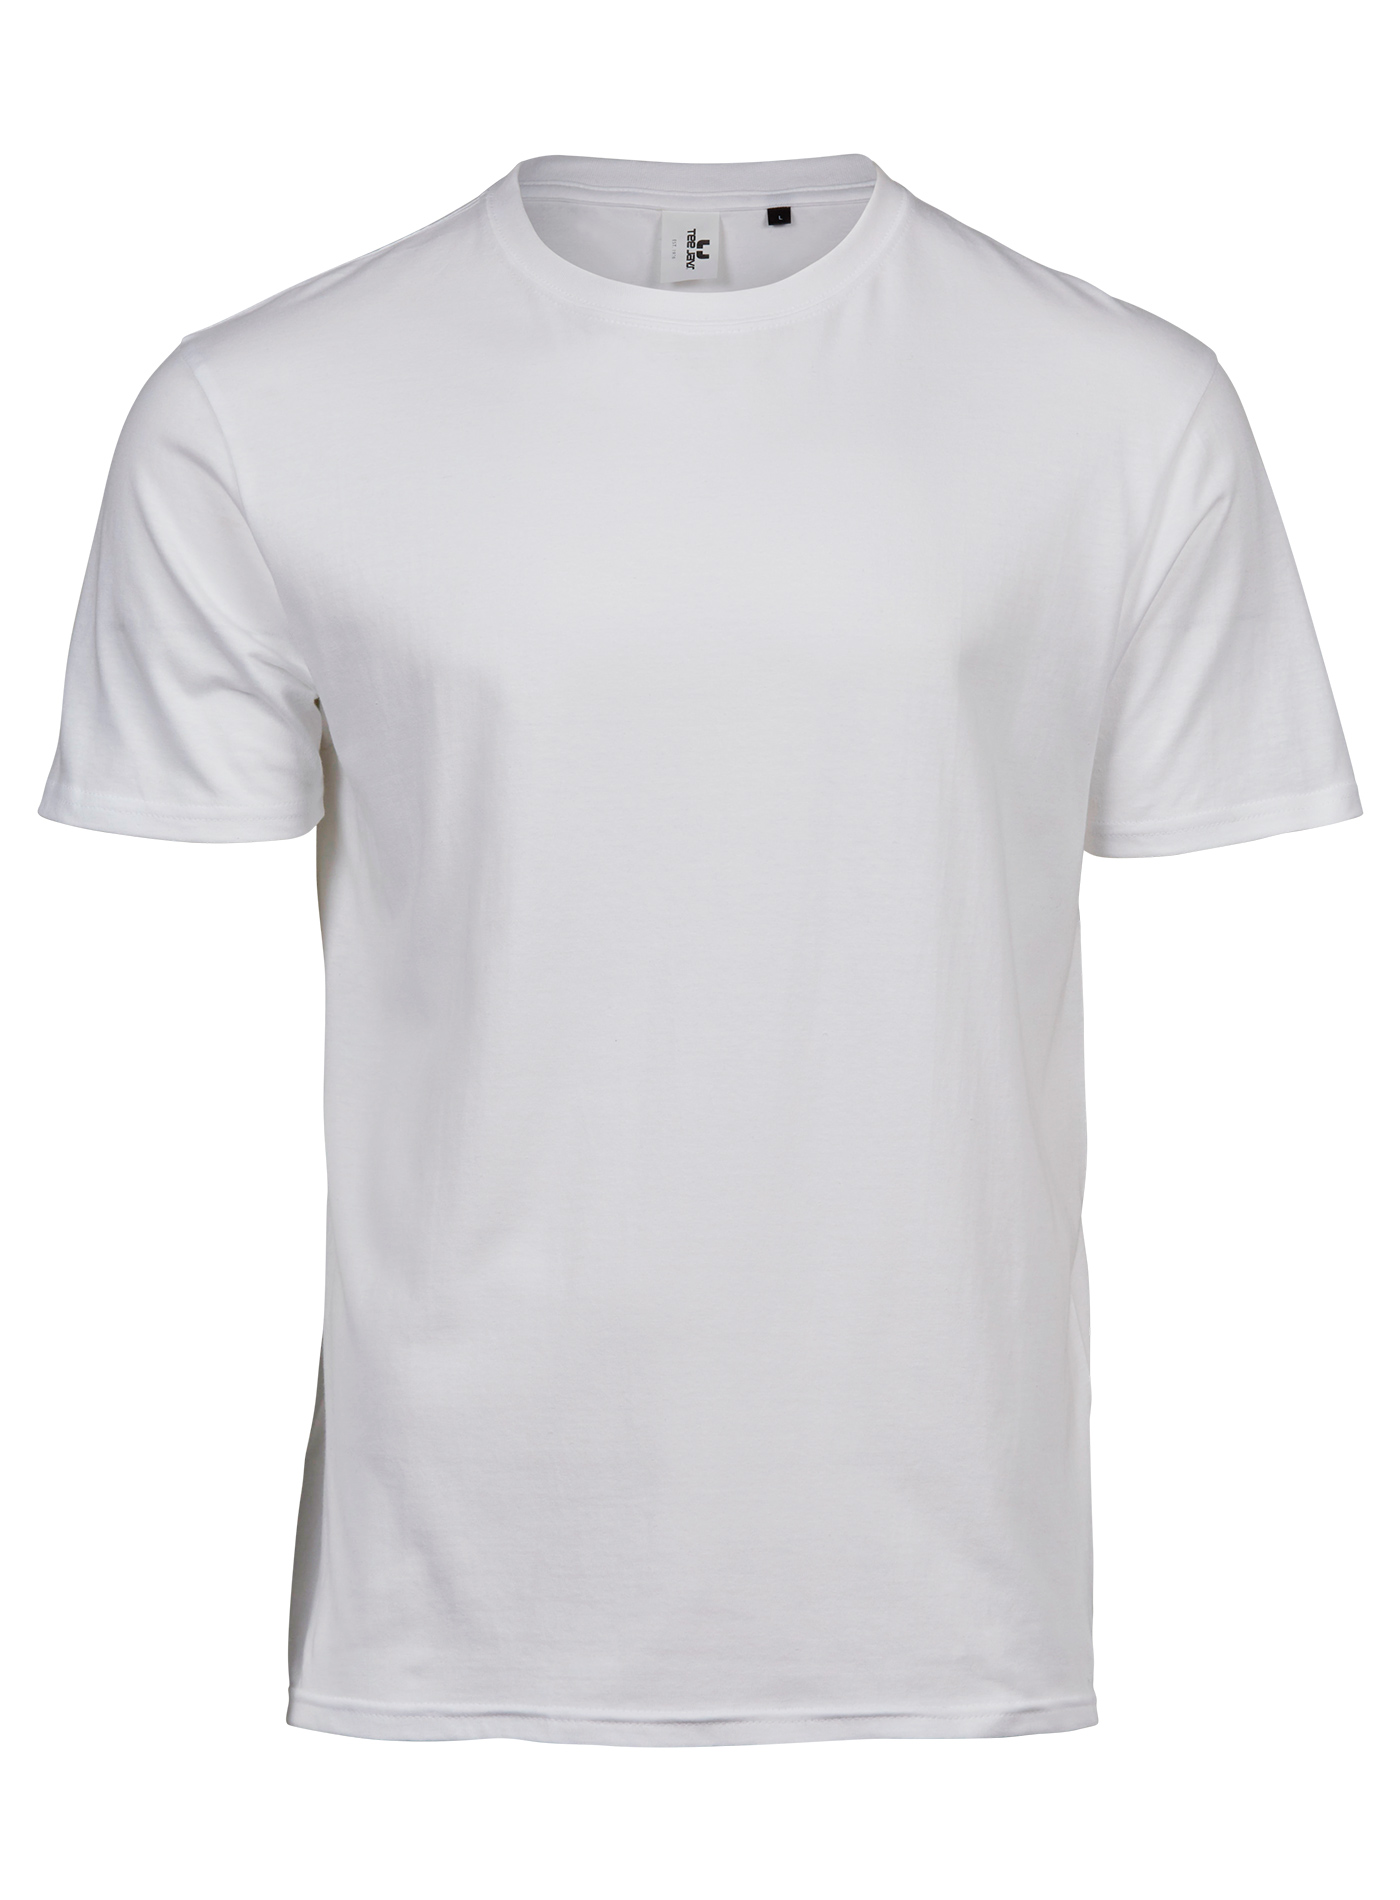 Pánské tričko Tee Jays Power - Bílá XL